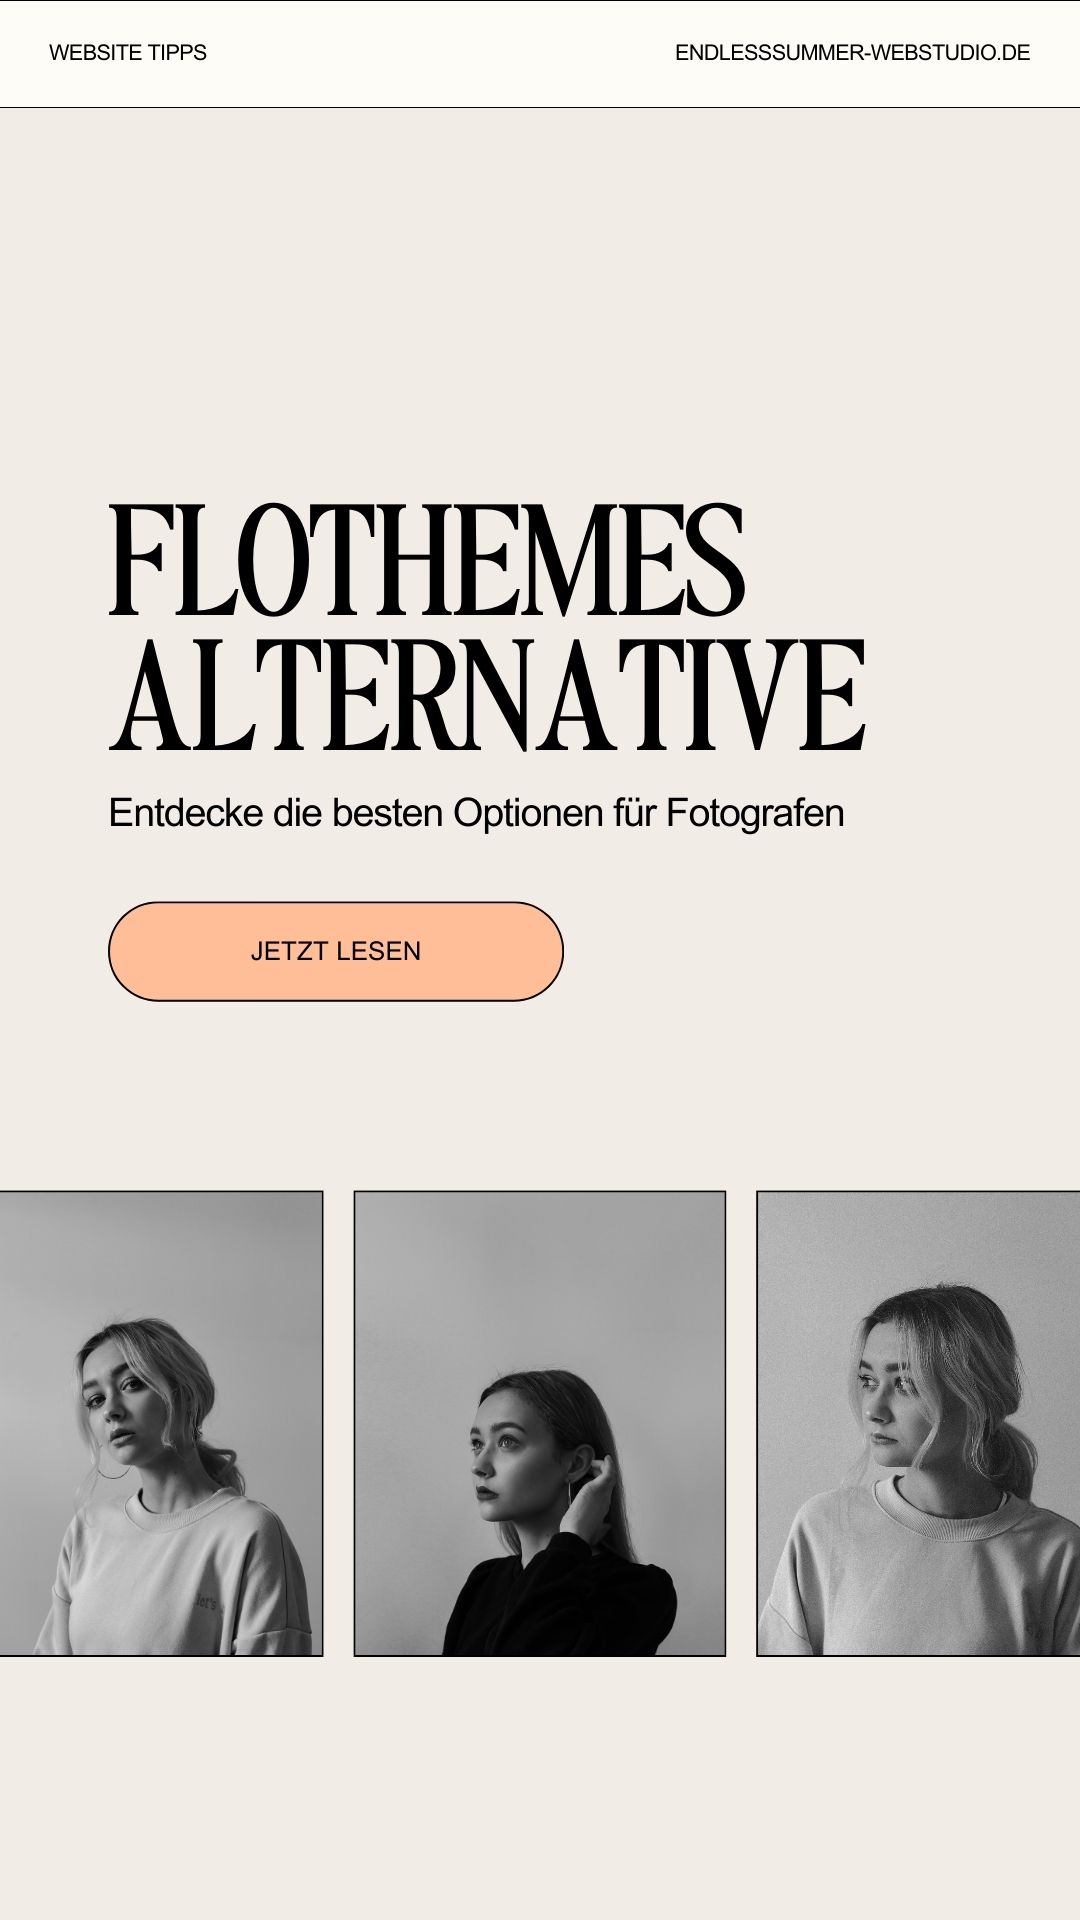 Grafik zu Flothemes Alternative.